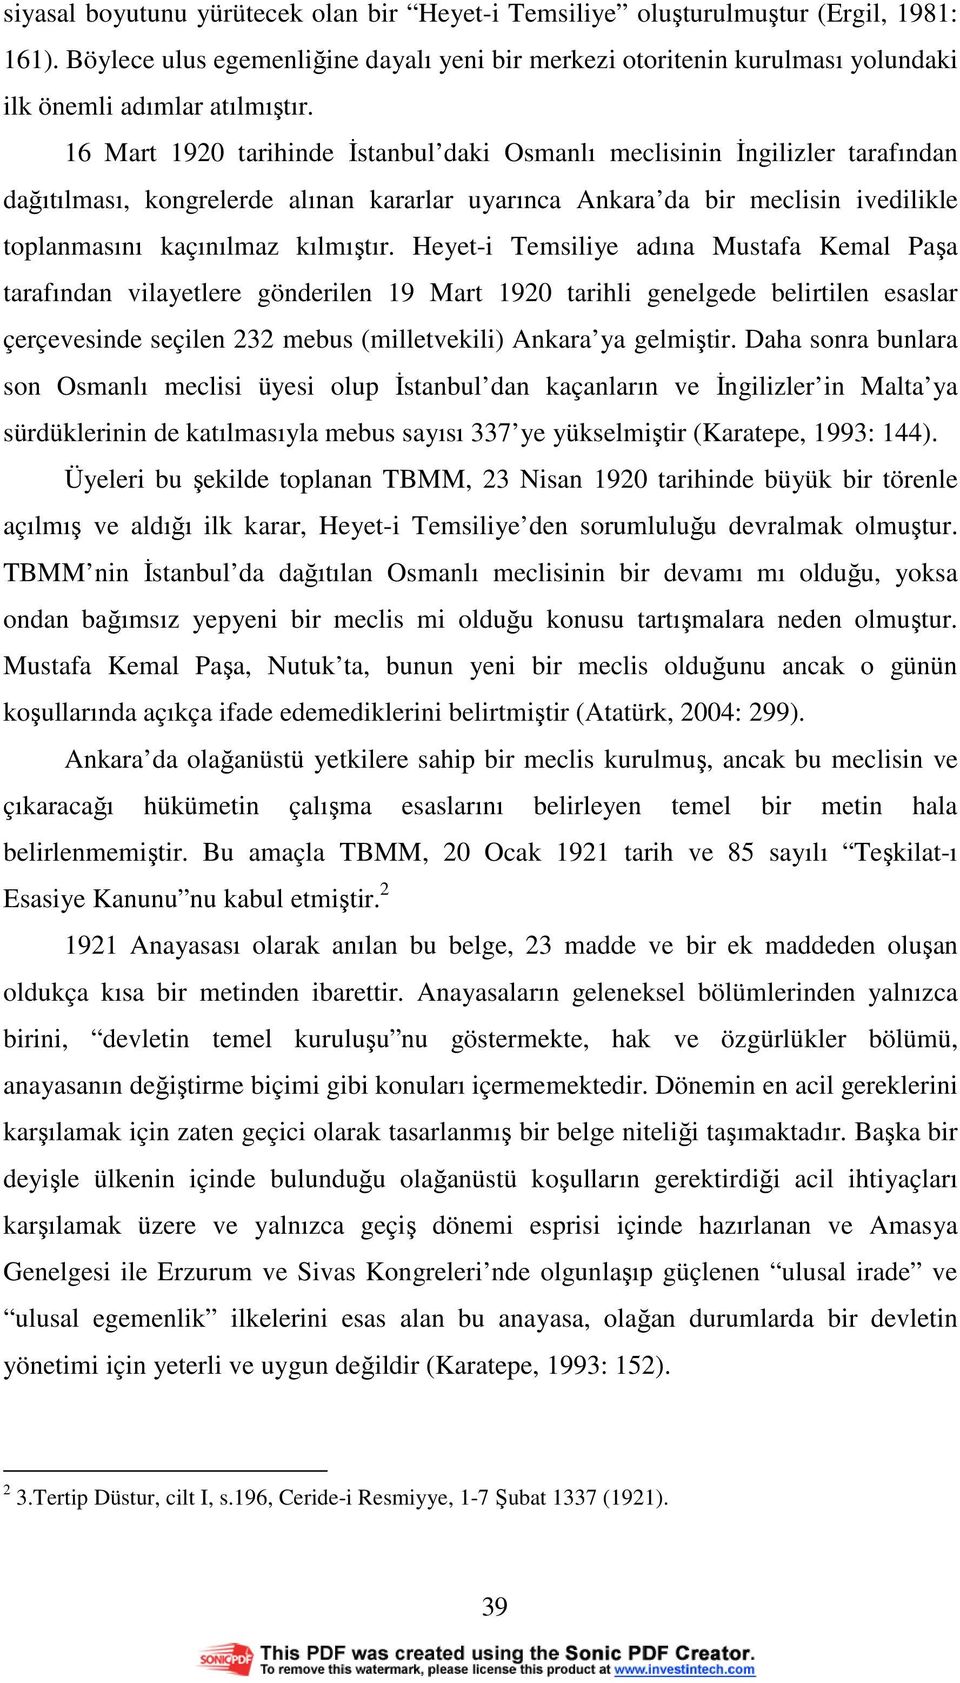 16 Mart 1920 tarihinde Đstanbul daki Osmanlı meclisinin Đngilizler tarafından dağıtılması, kongrelerde alınan kararlar uyarınca Ankara da bir meclisin ivedilikle toplanmasını kaçınılmaz kılmıştır.